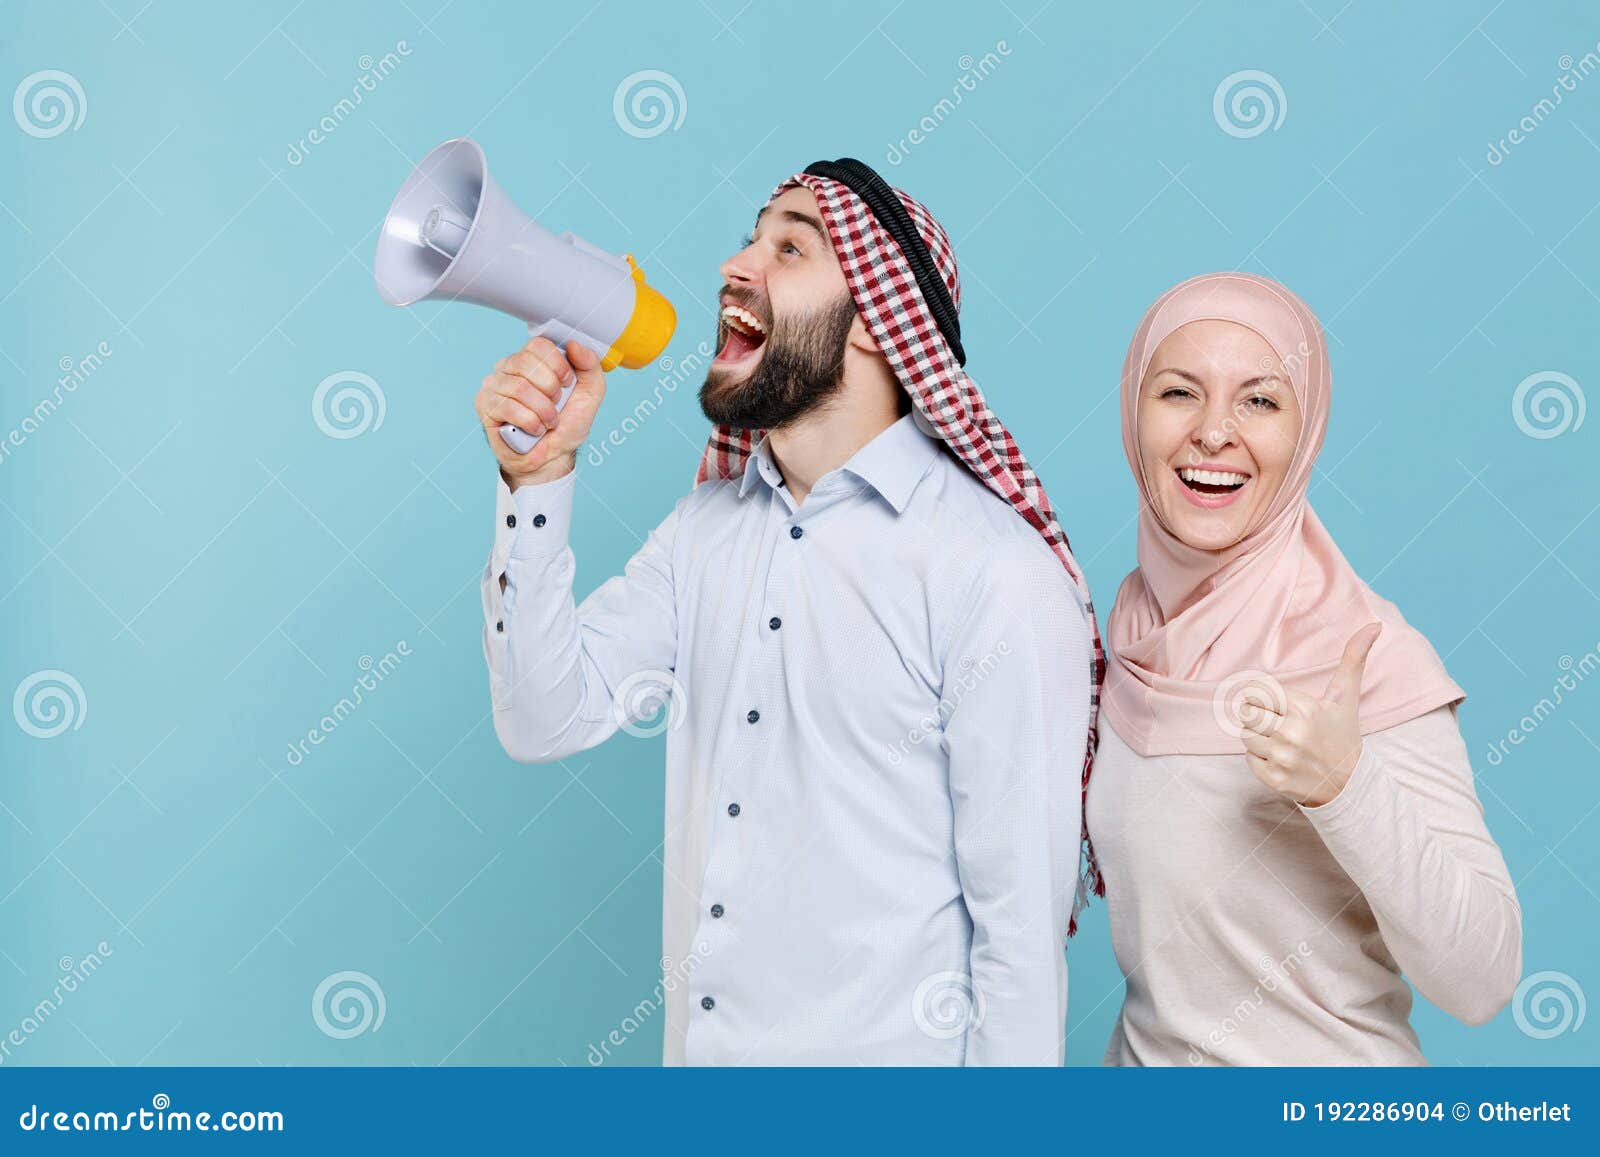 funny couple friends arabian muslim man wonam in keffiyeh kafiya ring igal agal hijab clothes  on blue